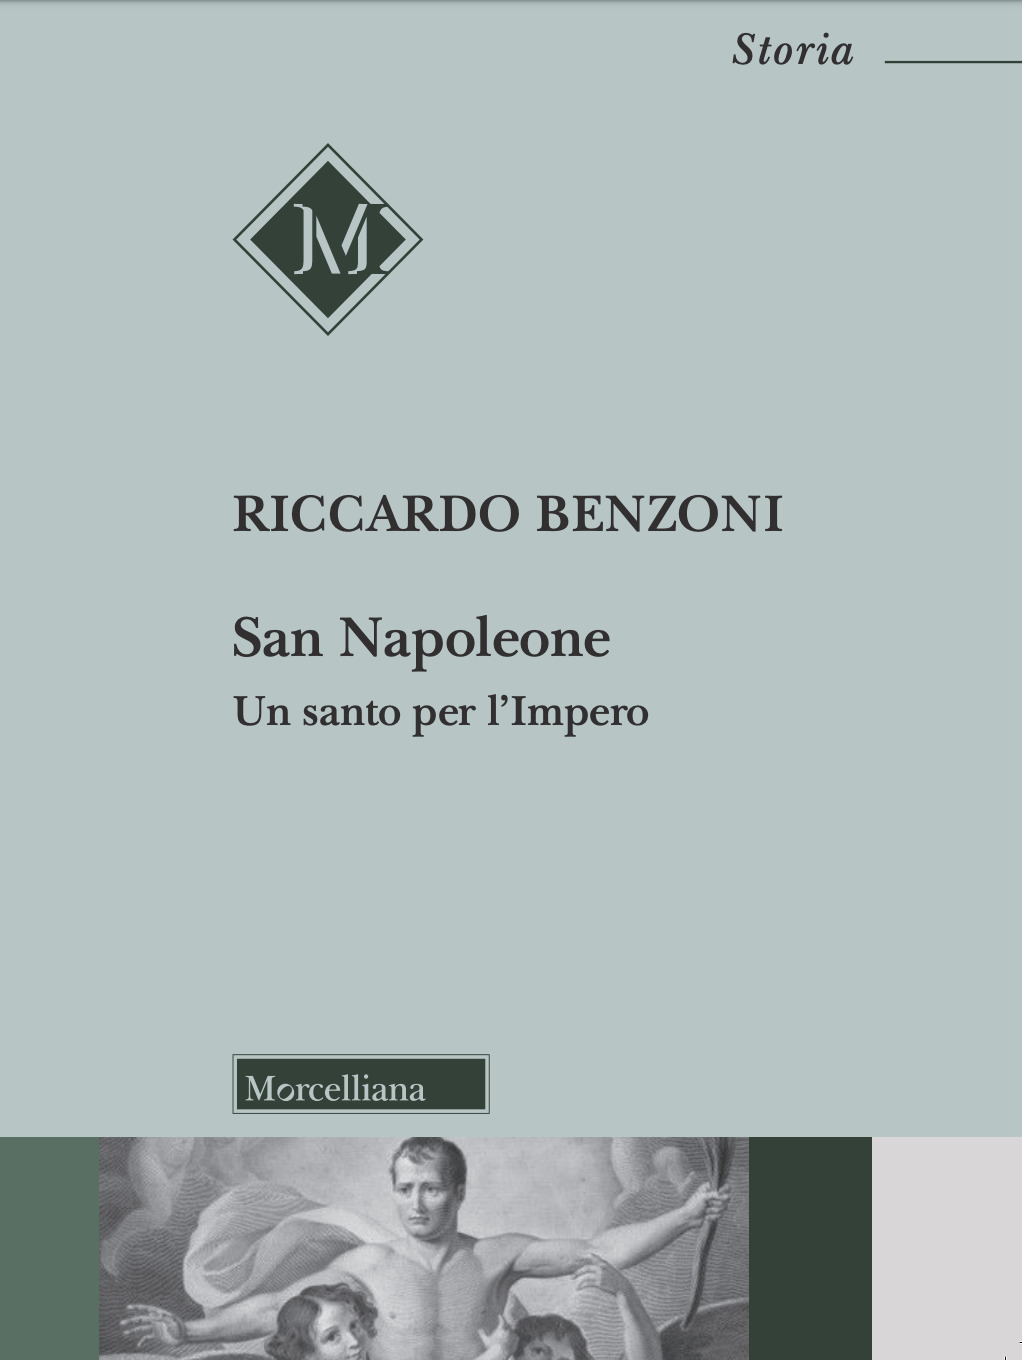 Riccardo Benzoni, San Napoleone. Un santo per l’Impero (Morcelliana,  2019)